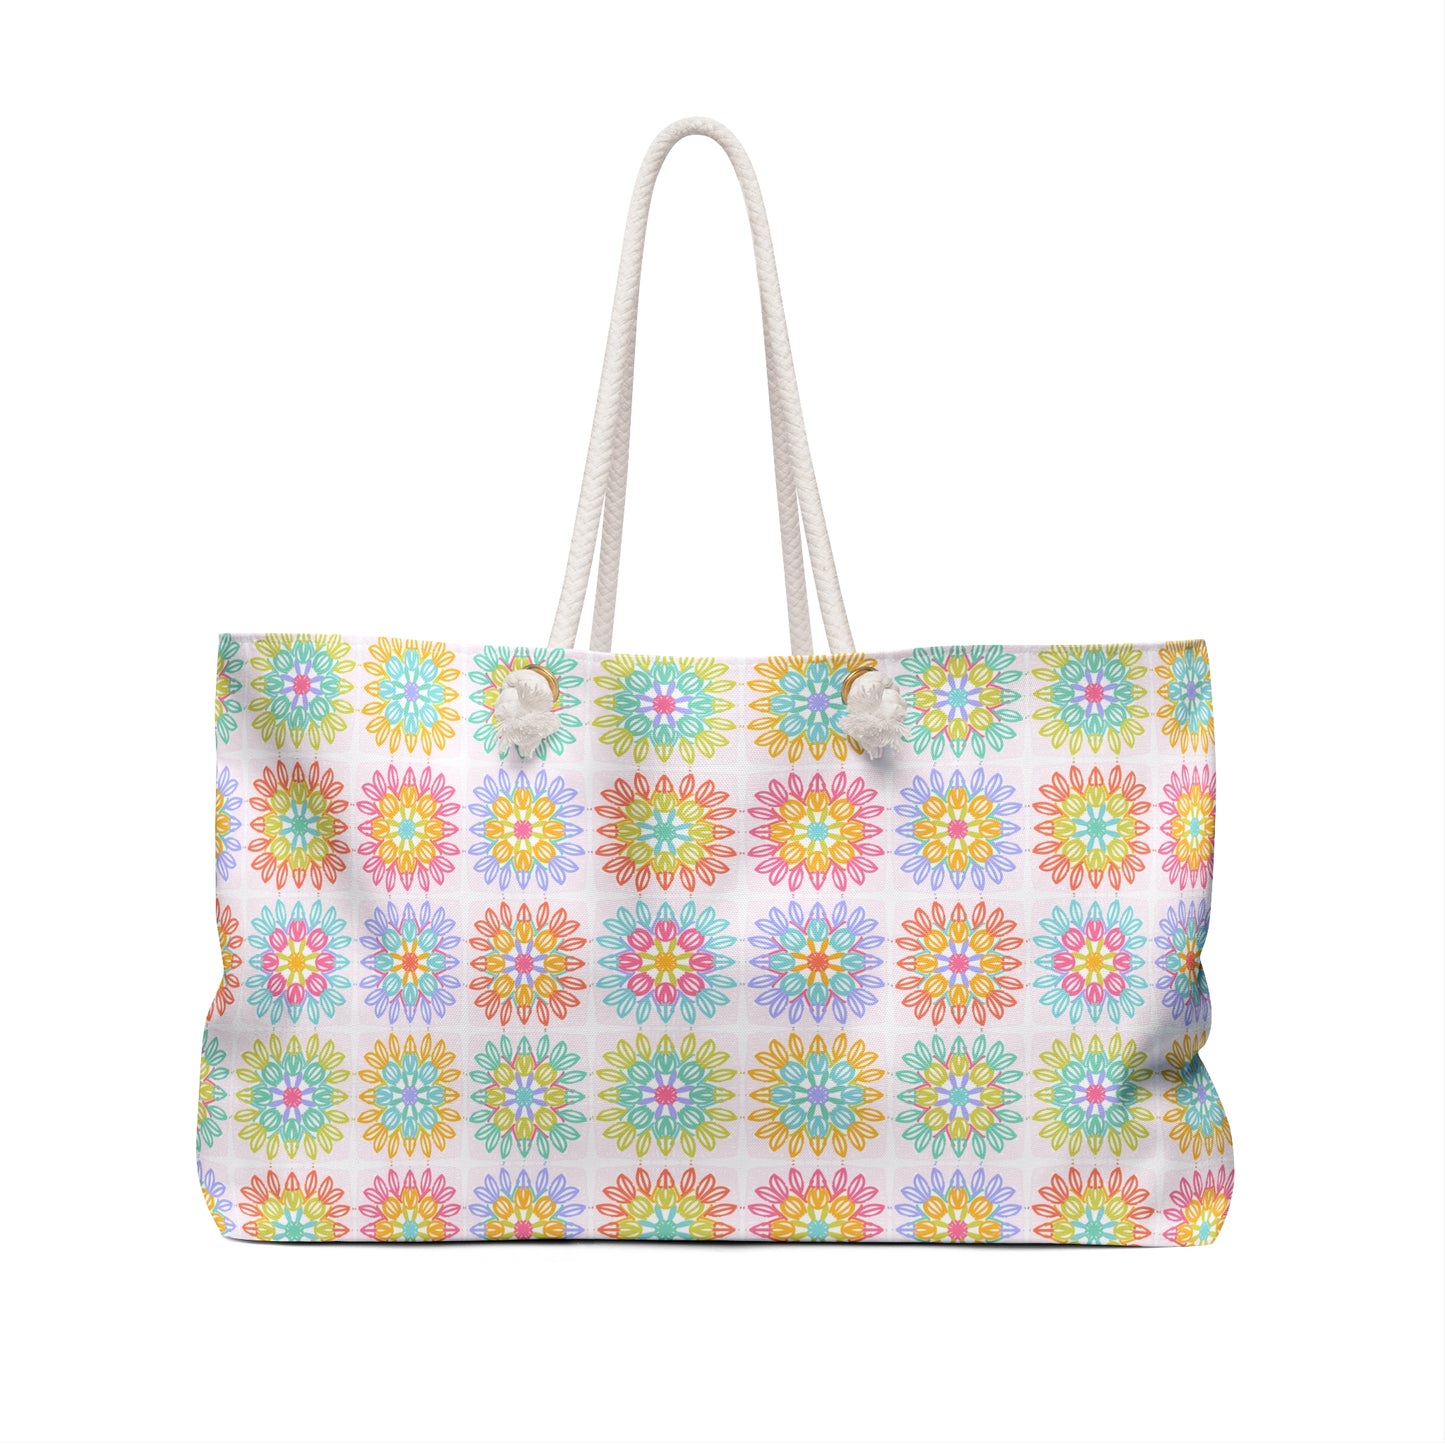 Granny Square in Summer Lovin’ | Weekender Bag | Crochet | Knit | Yarn | Craft